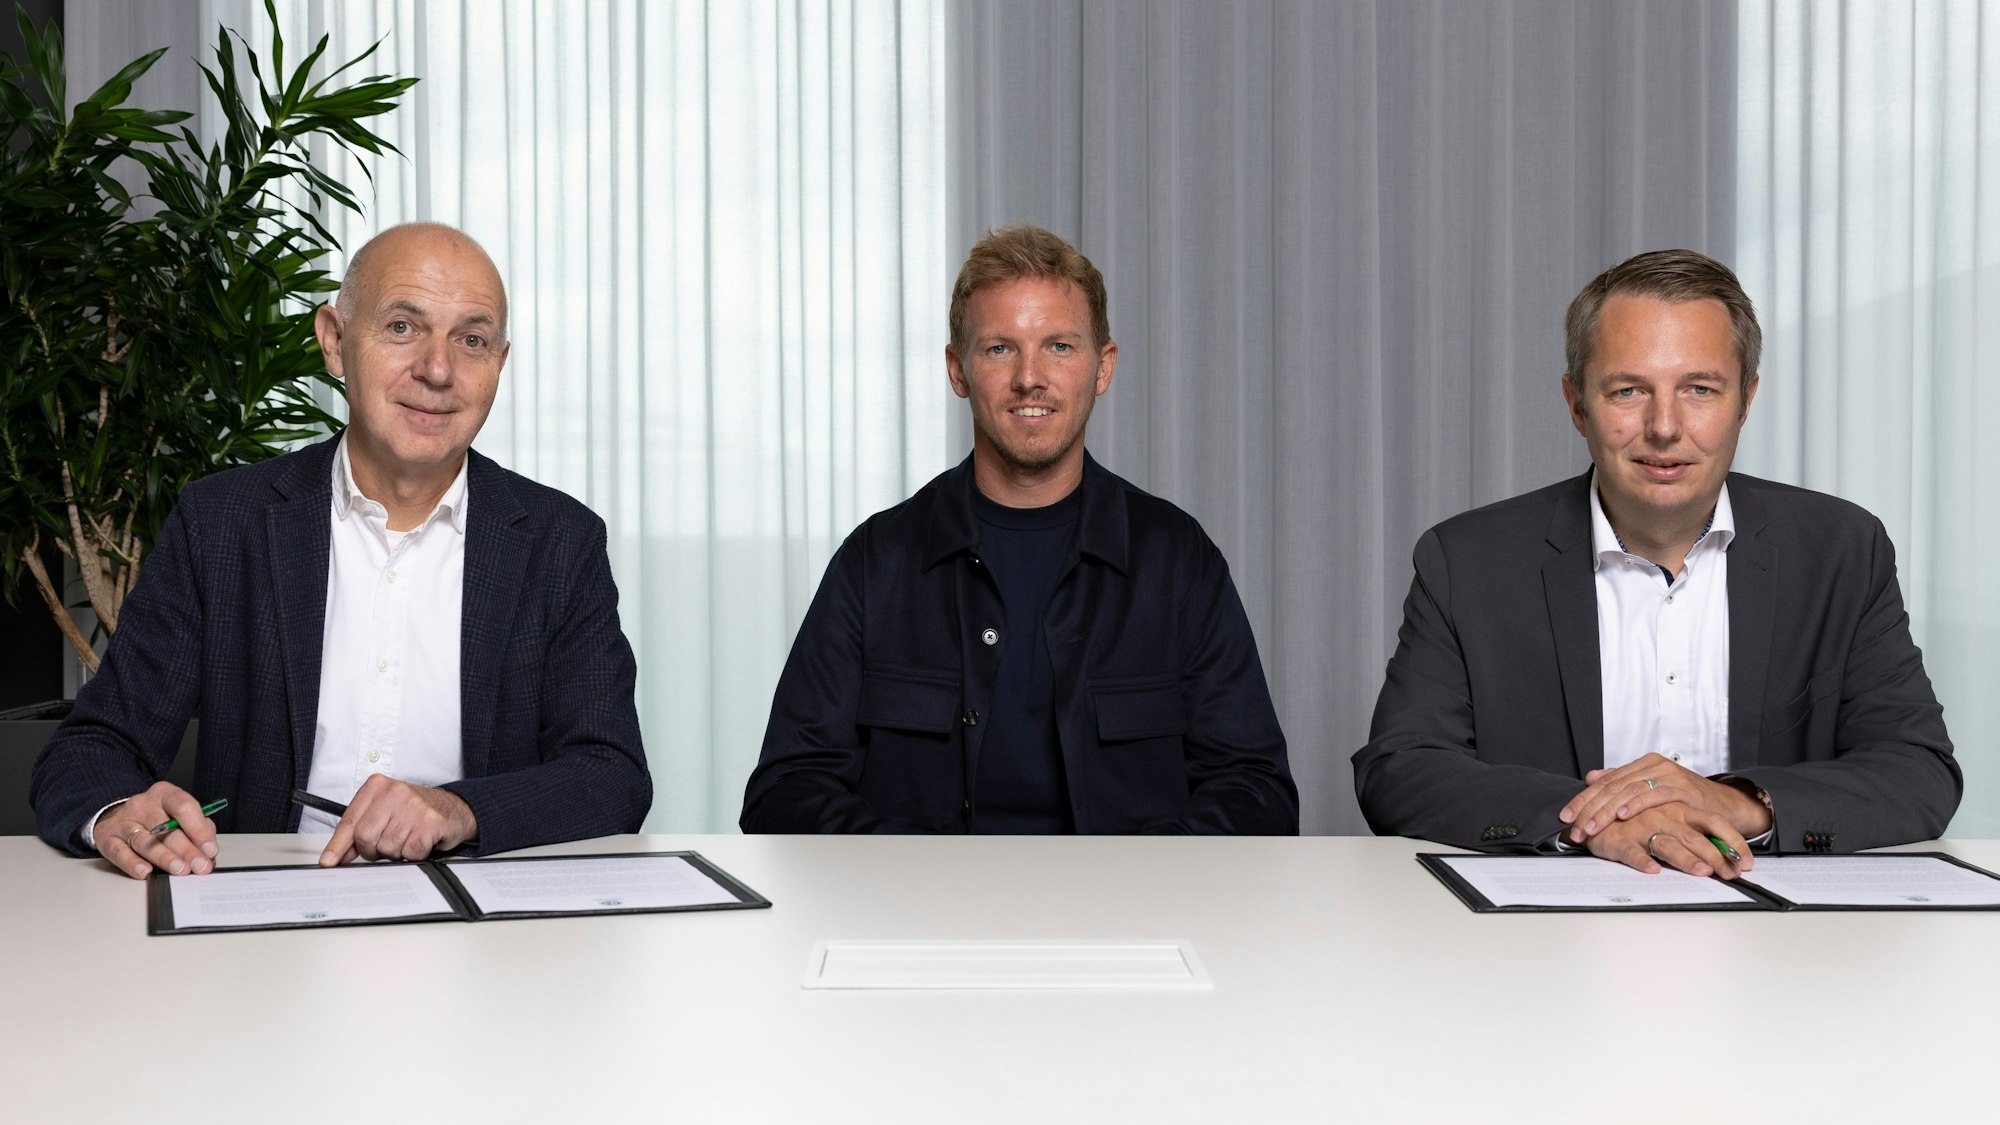 Vertragsunterzeichnung mit Bundestrainer Julian Nagelsmann, 

v.l.: Bernd Neuendorf (DFB-Praesident), Julian Nagelsmann (DFB-Bundestrainer) und Stephan Grunwald (DFB-Schatzmeister).